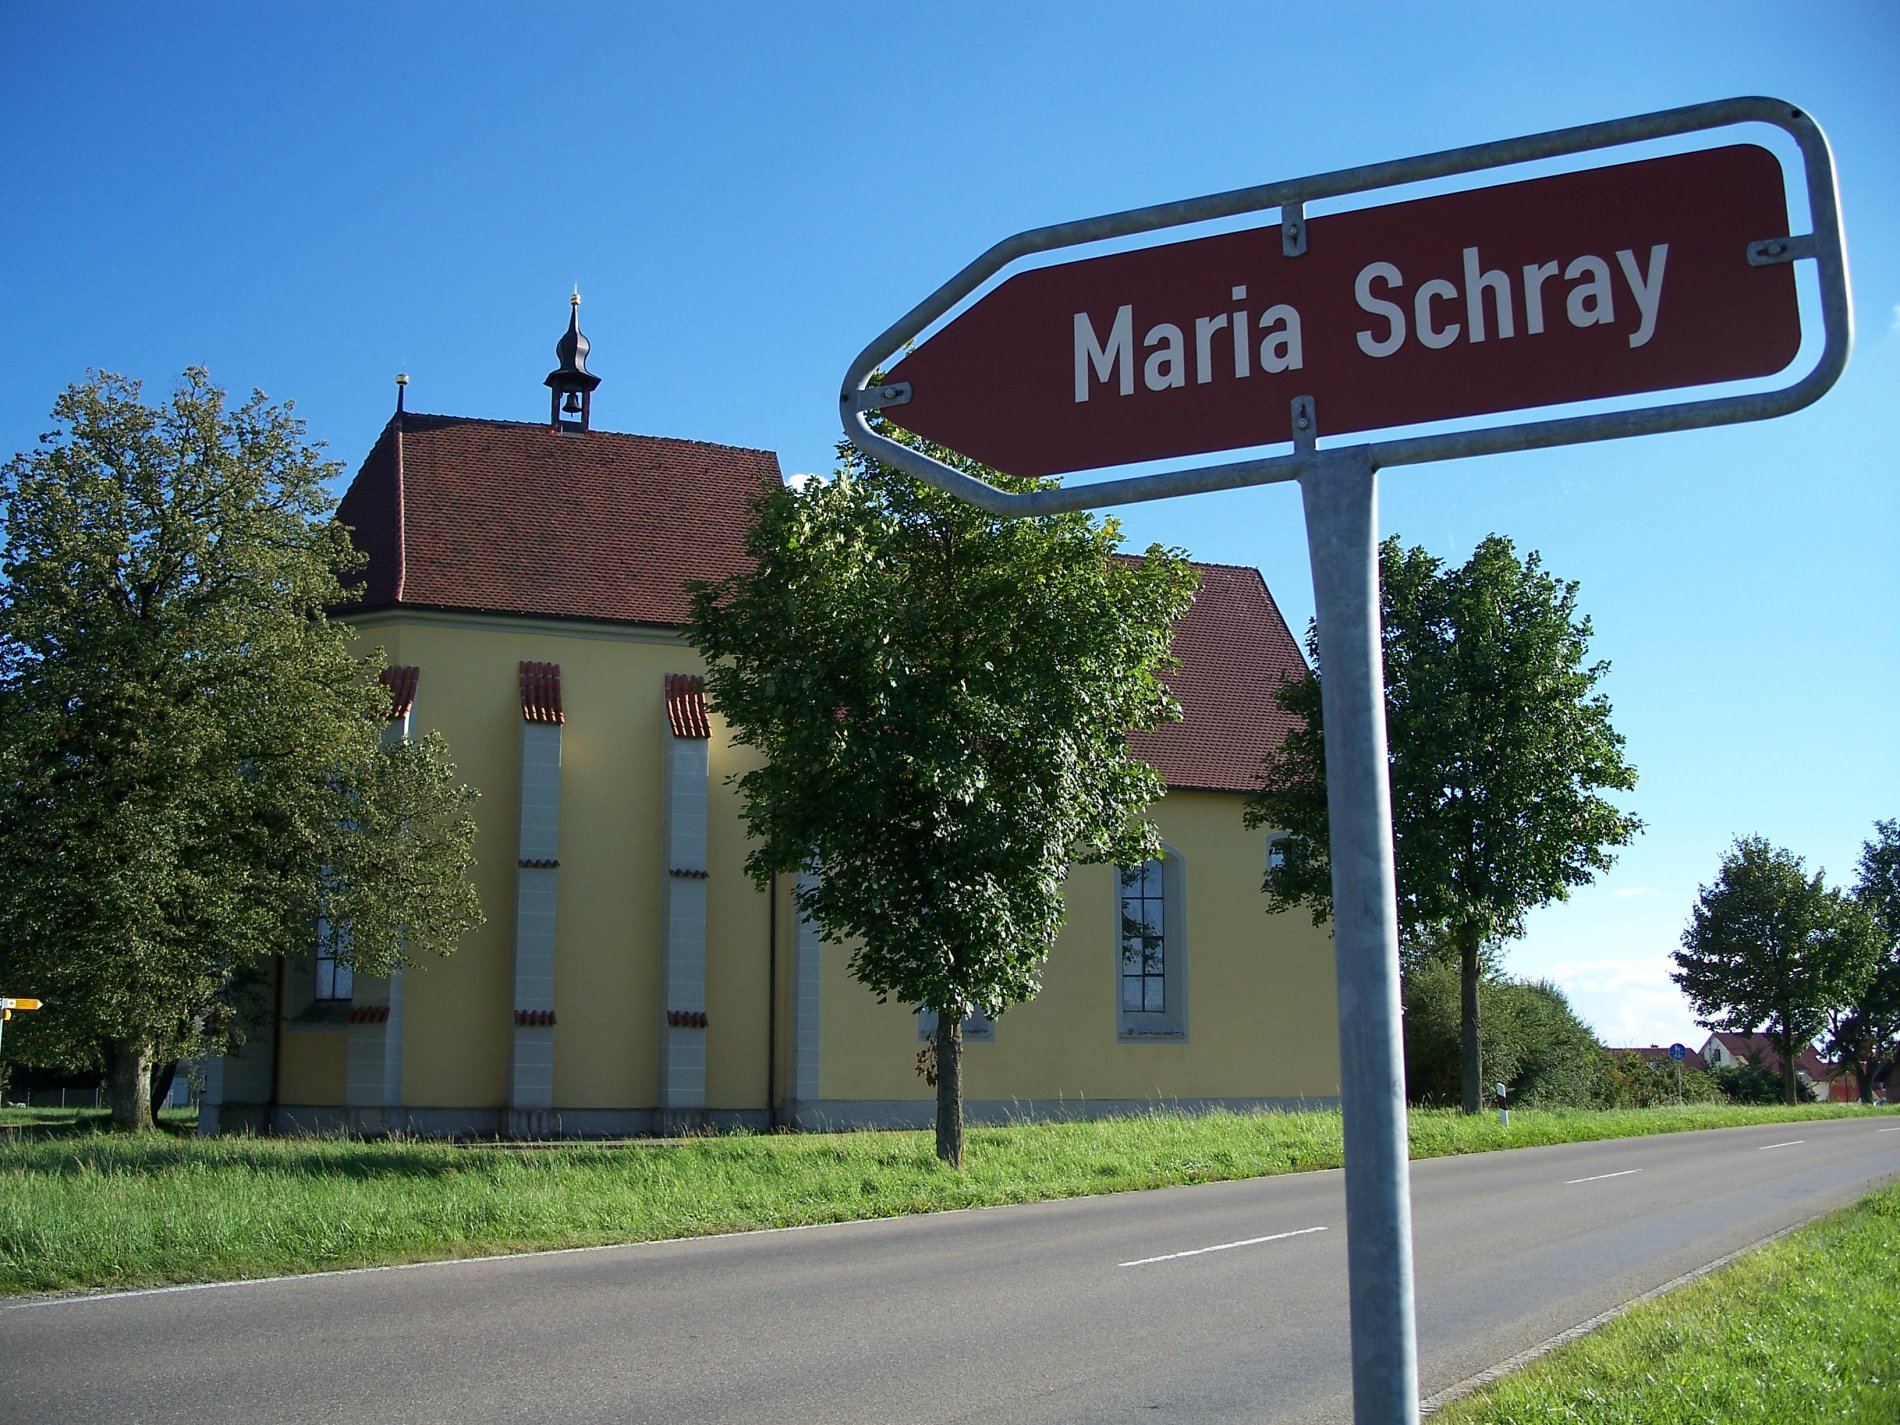 Wallfahrtskirche Maria Schray mit Wegweiser